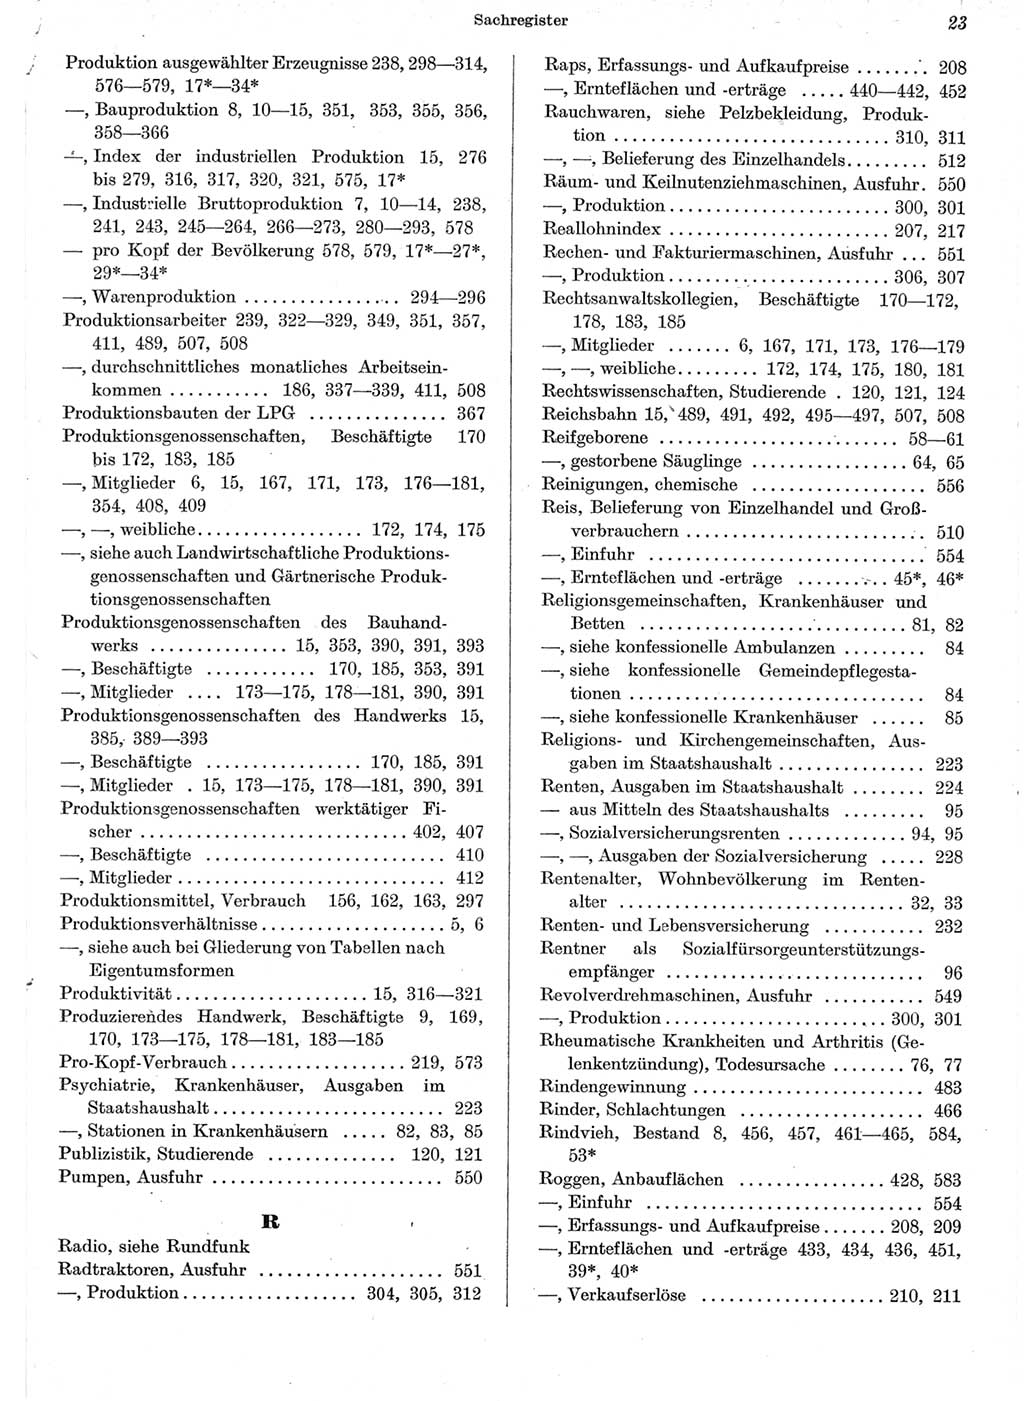 Statistisches Jahrbuch der Deutschen Demokratischen Republik (DDR) 1962, Seite 23 (Stat. Jb. DDR 1962, S. 23)